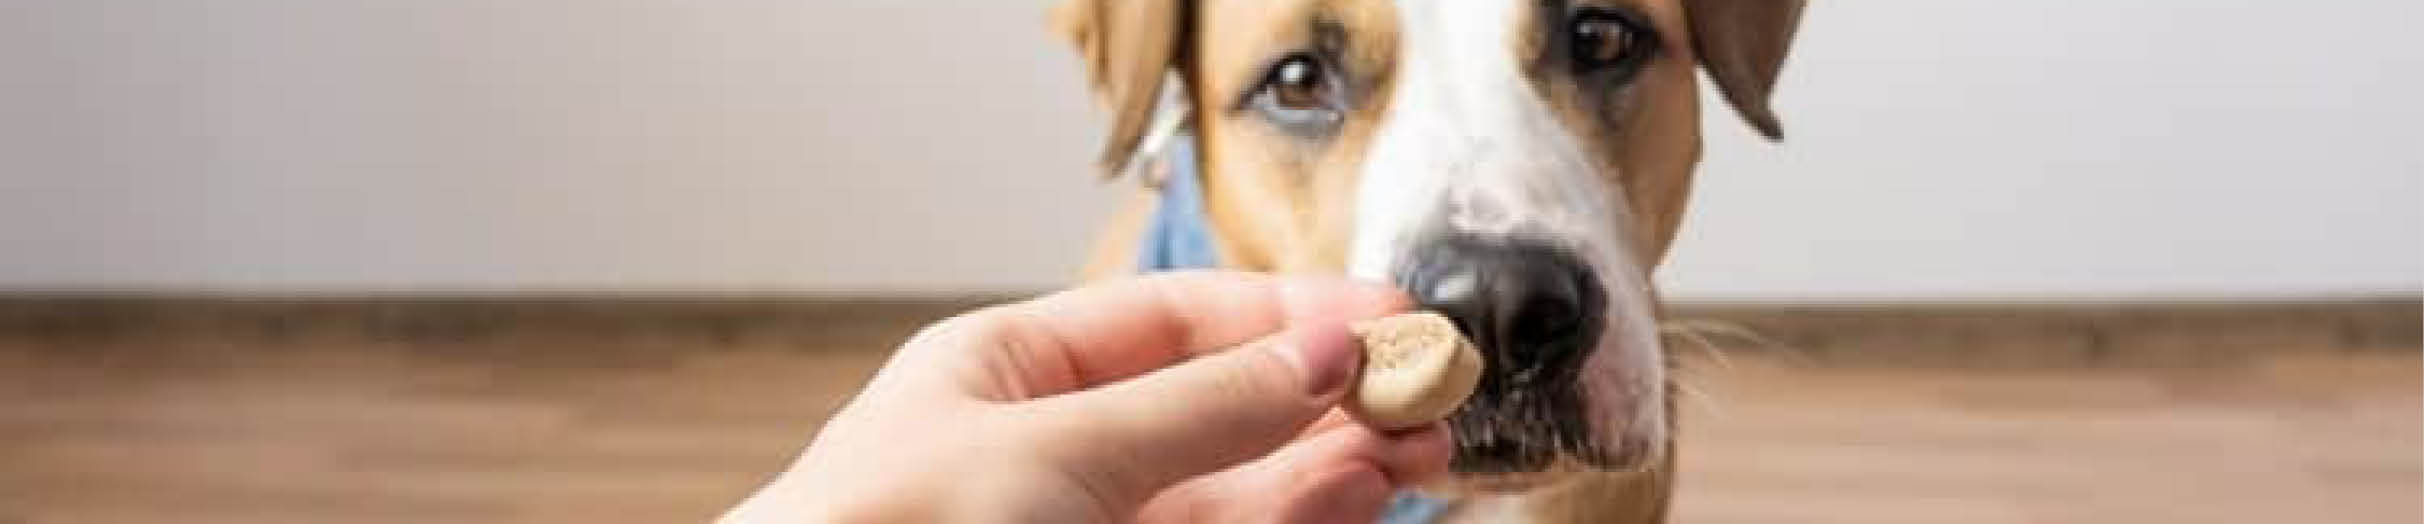 Buy Dog Treats at Absolute Pets 